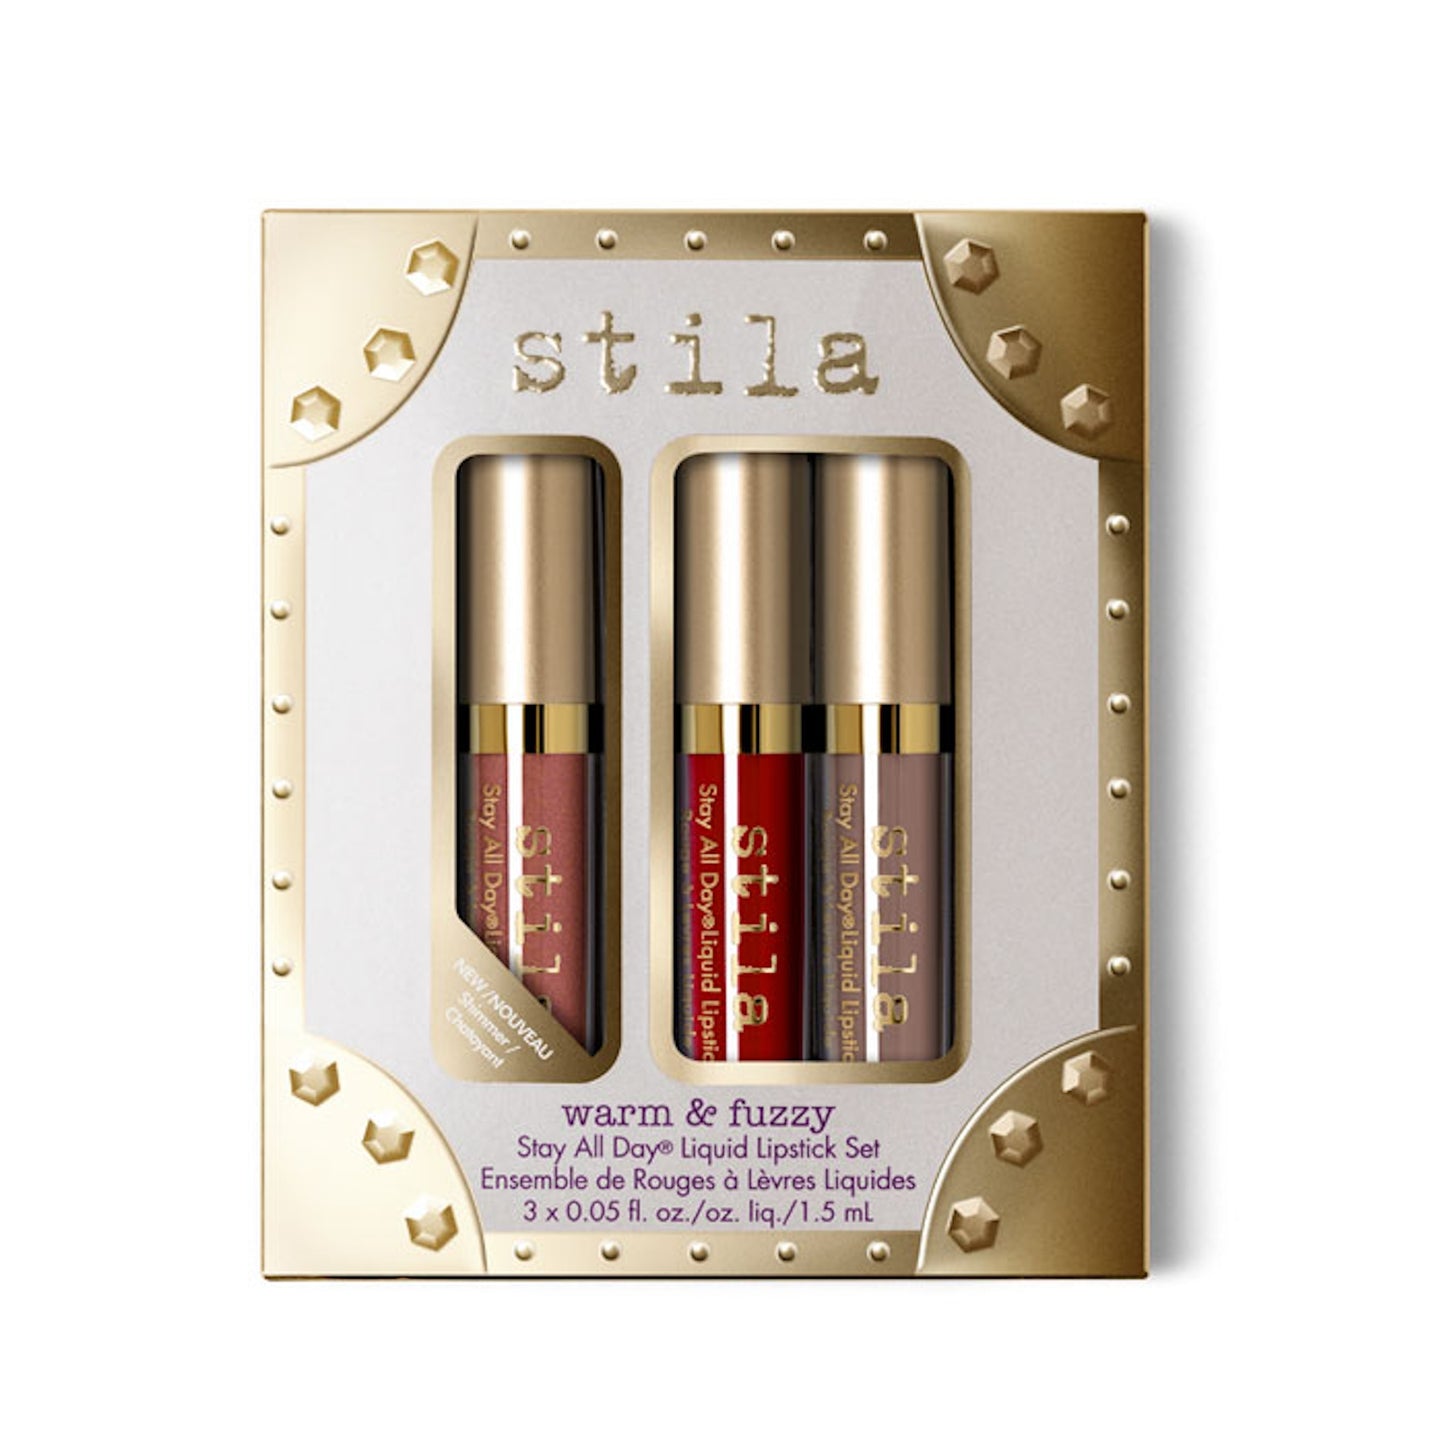 Stila Warm & Fuzzy - Stay All Day® Liquid Lipstick Set